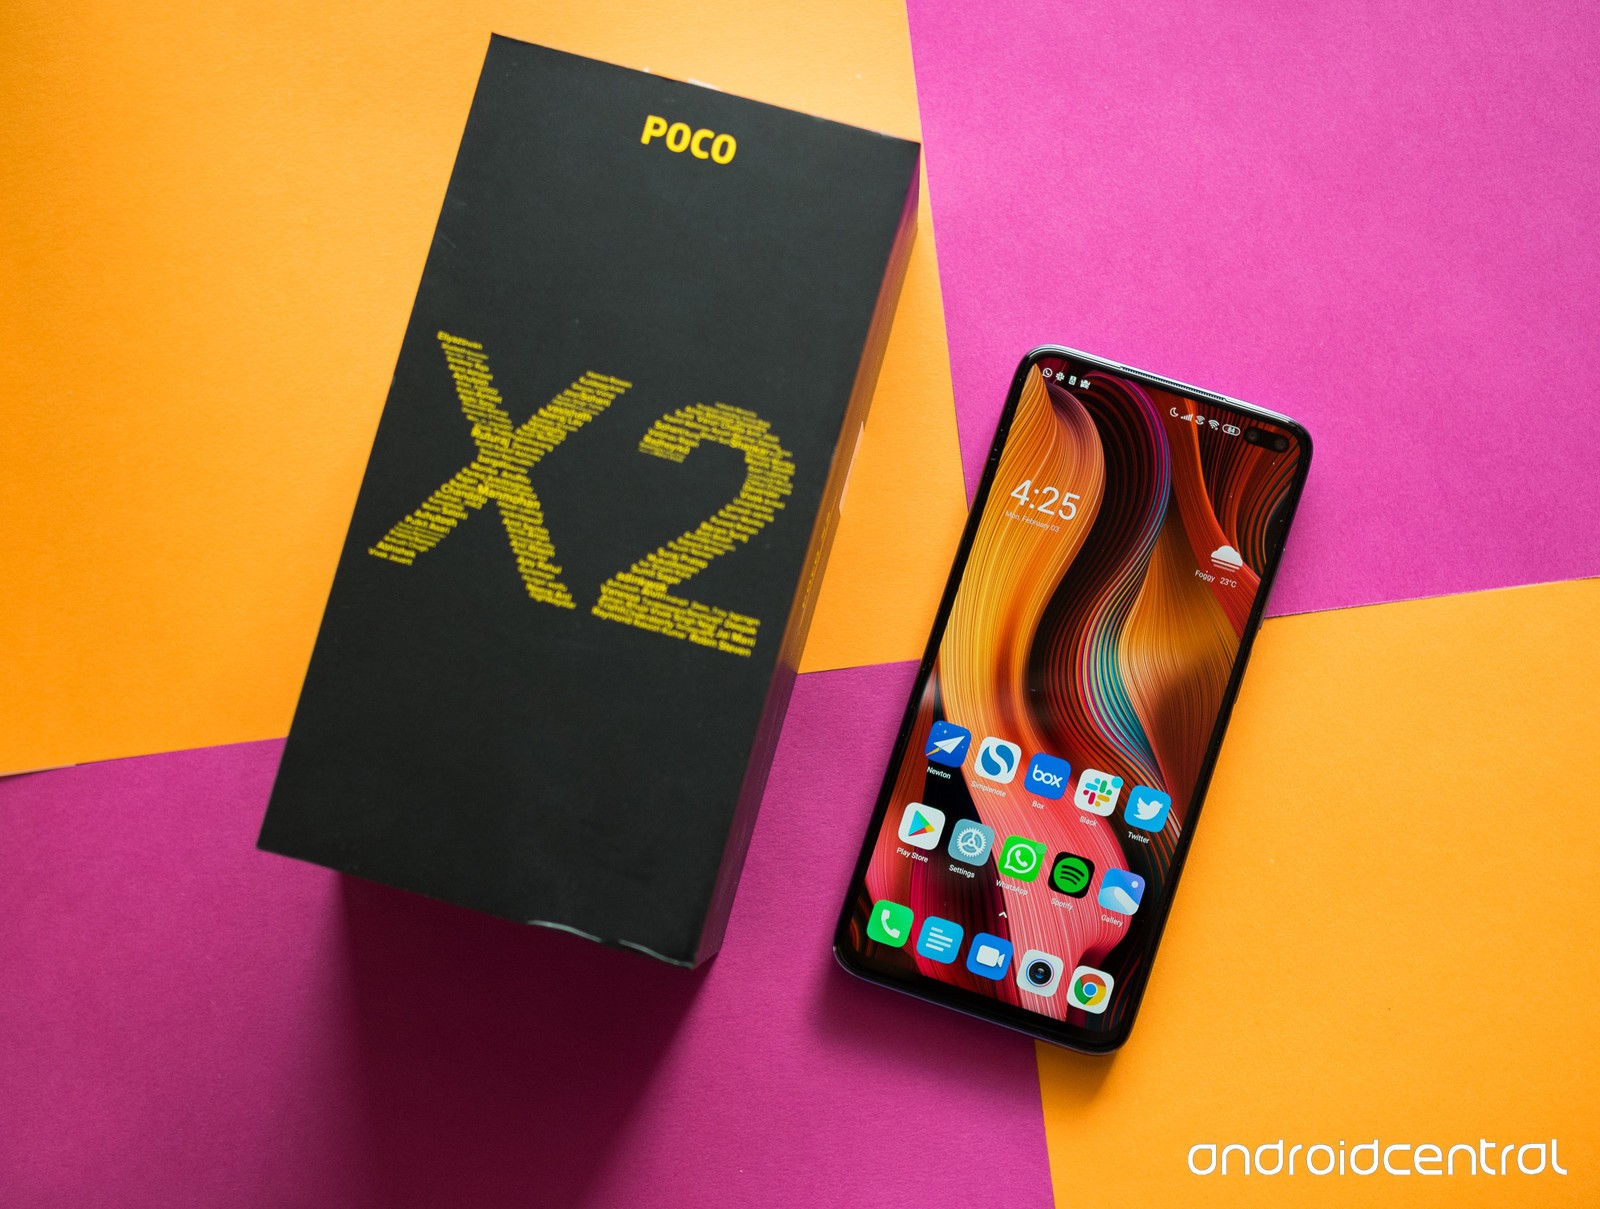 Poco X2 chính thức ra
mắt: Phiên bản đổi tên của Redmi K30 với Snapdragon 730G,
màn hình 120Hz, giá chỉ hơn 5 triệu